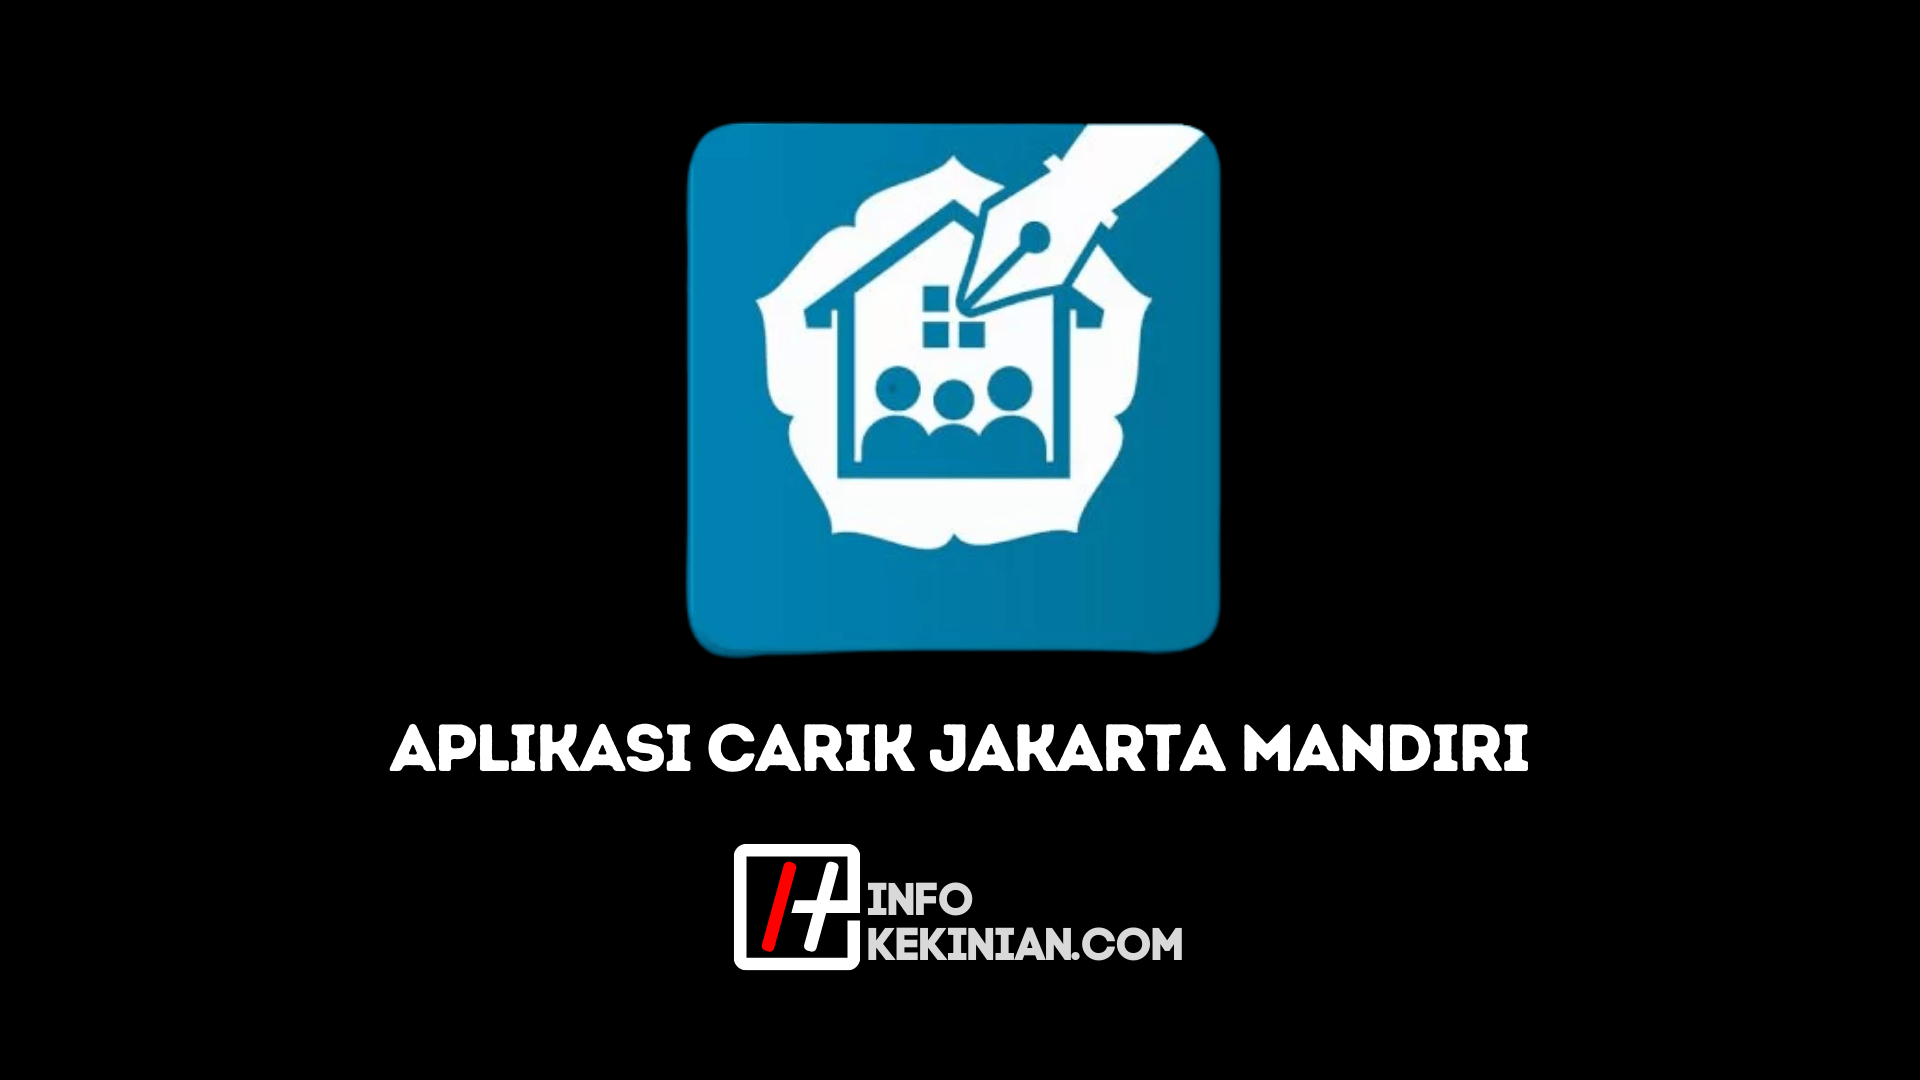 Tentang Carik Jakarta Mandiri